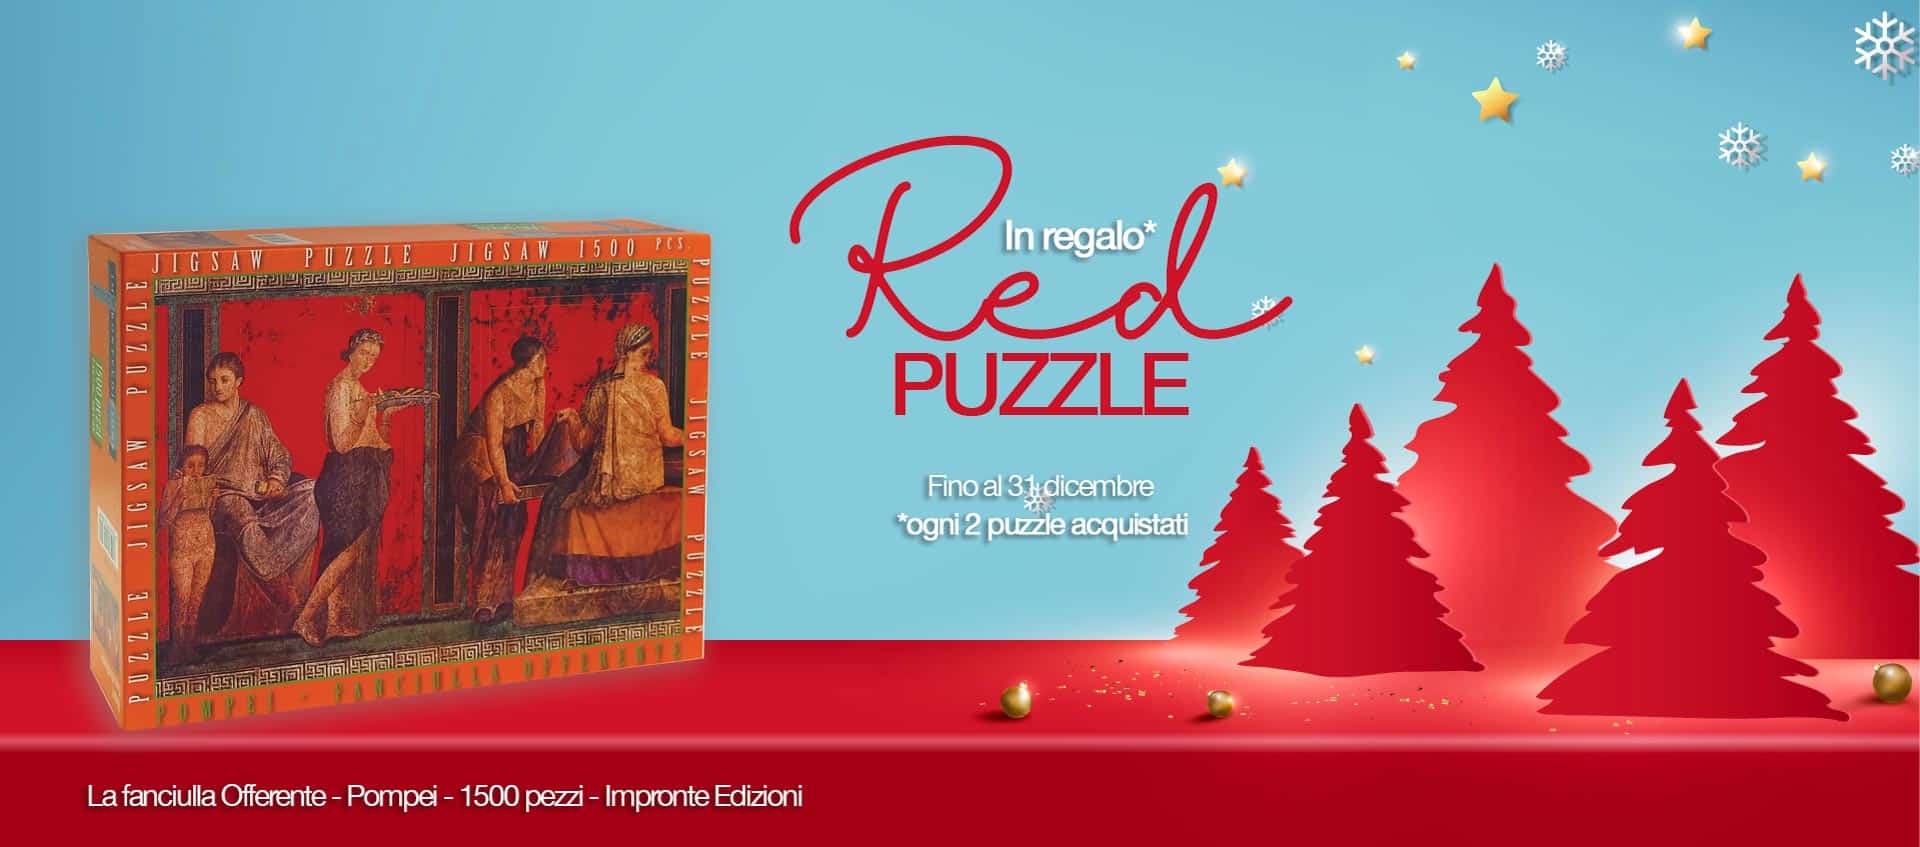 Puzzle per adulti gratis – La Fanciulla offerente in omaggio per i Red Days